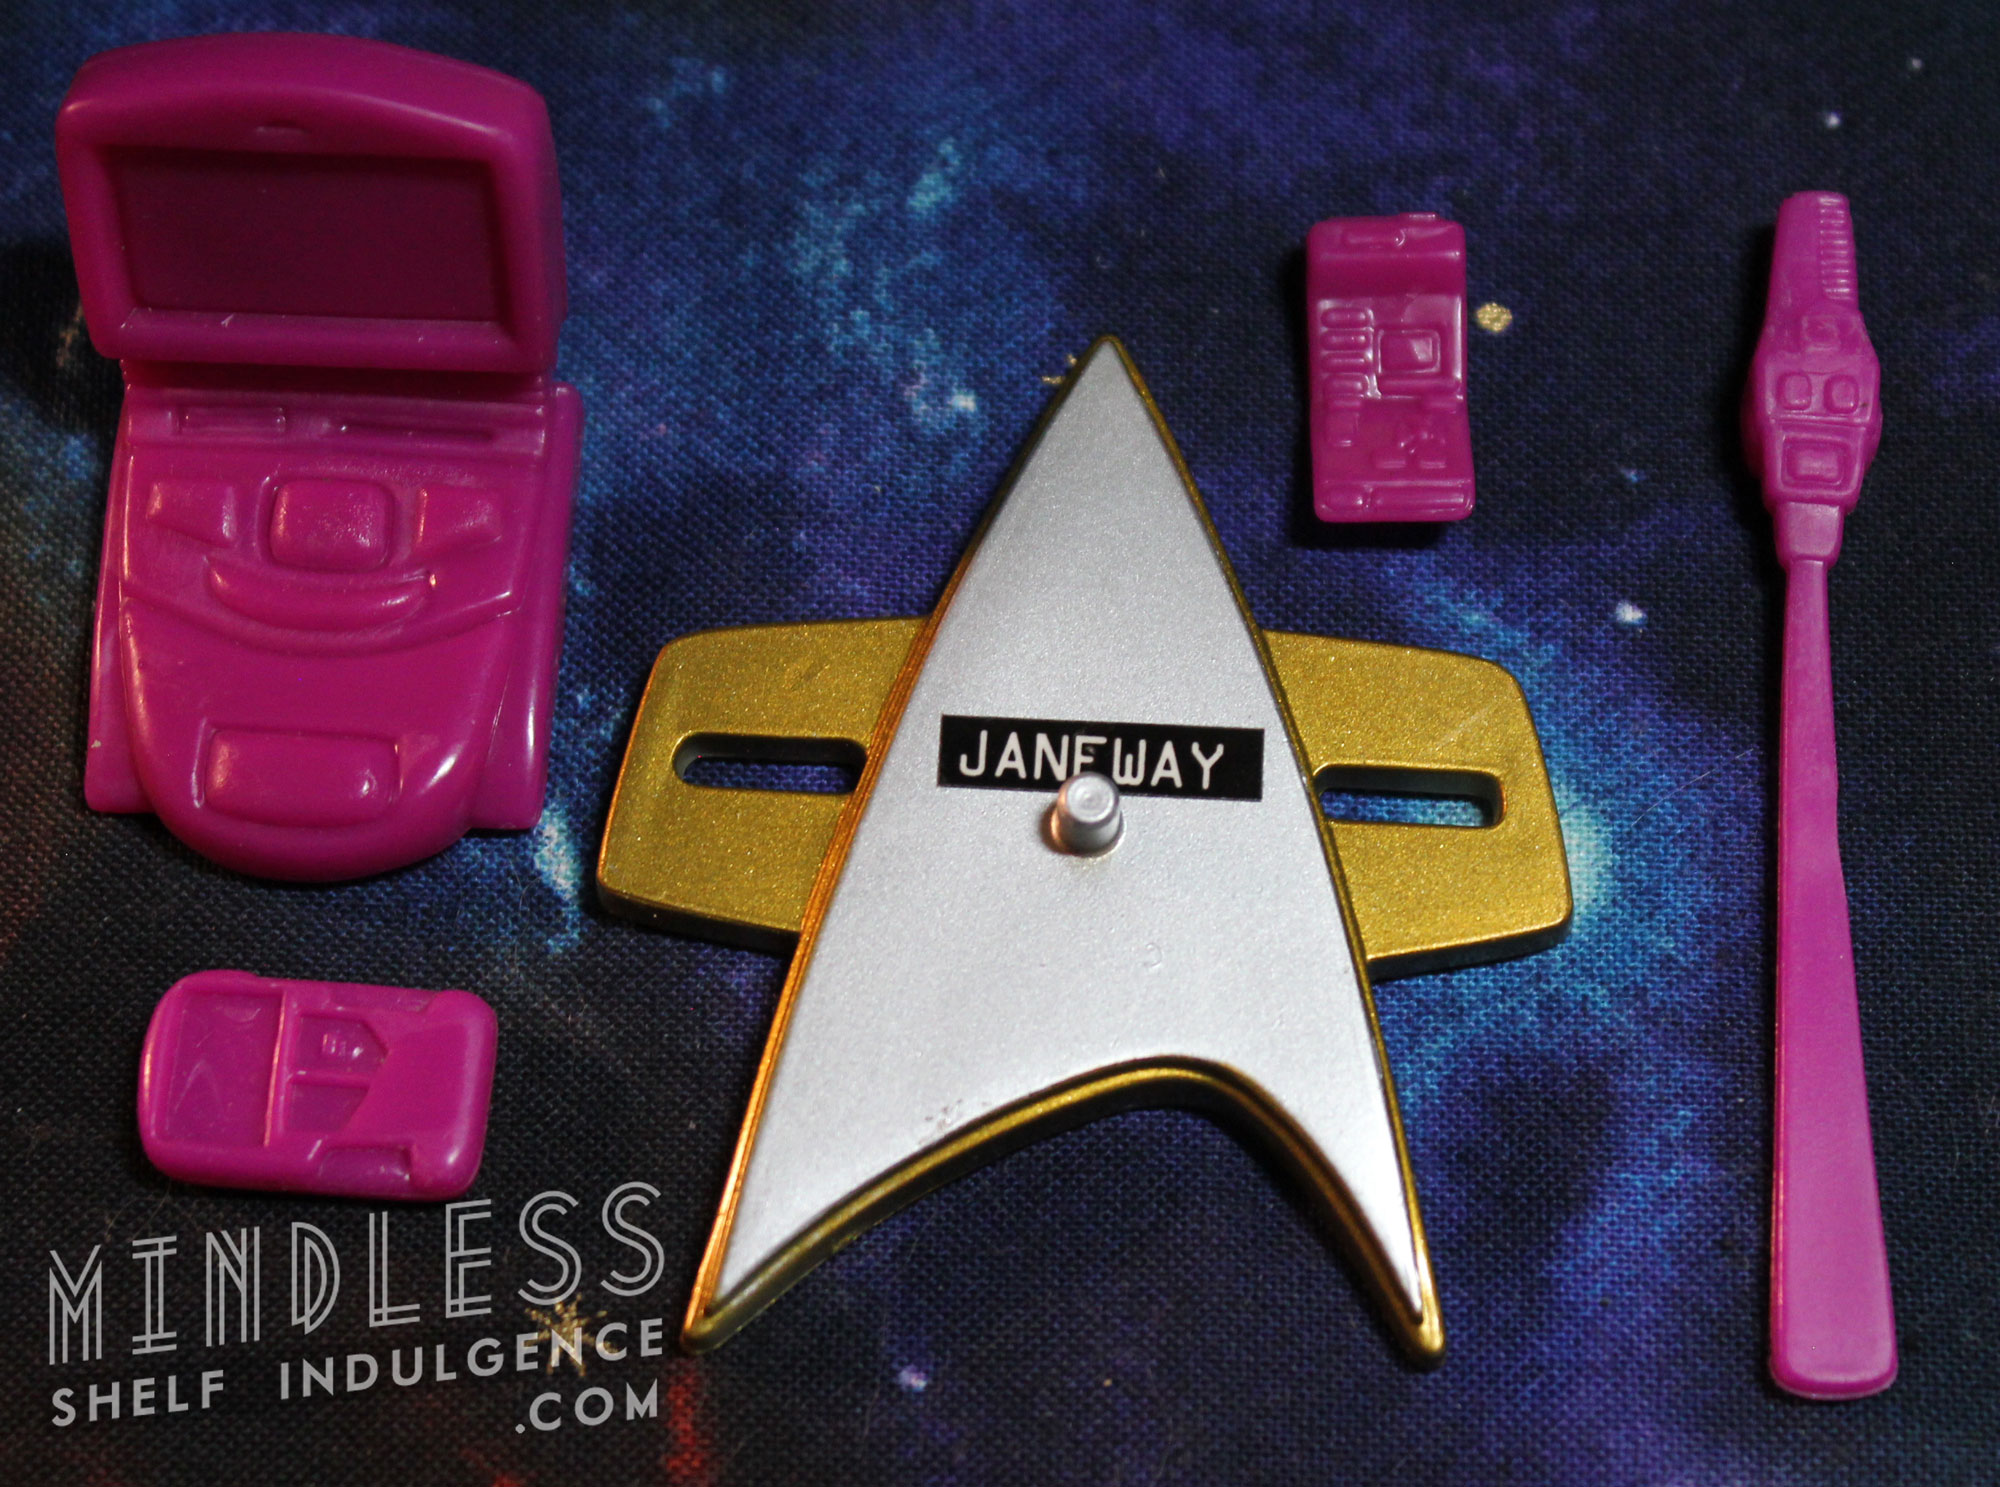 Captain Janeway's accessories